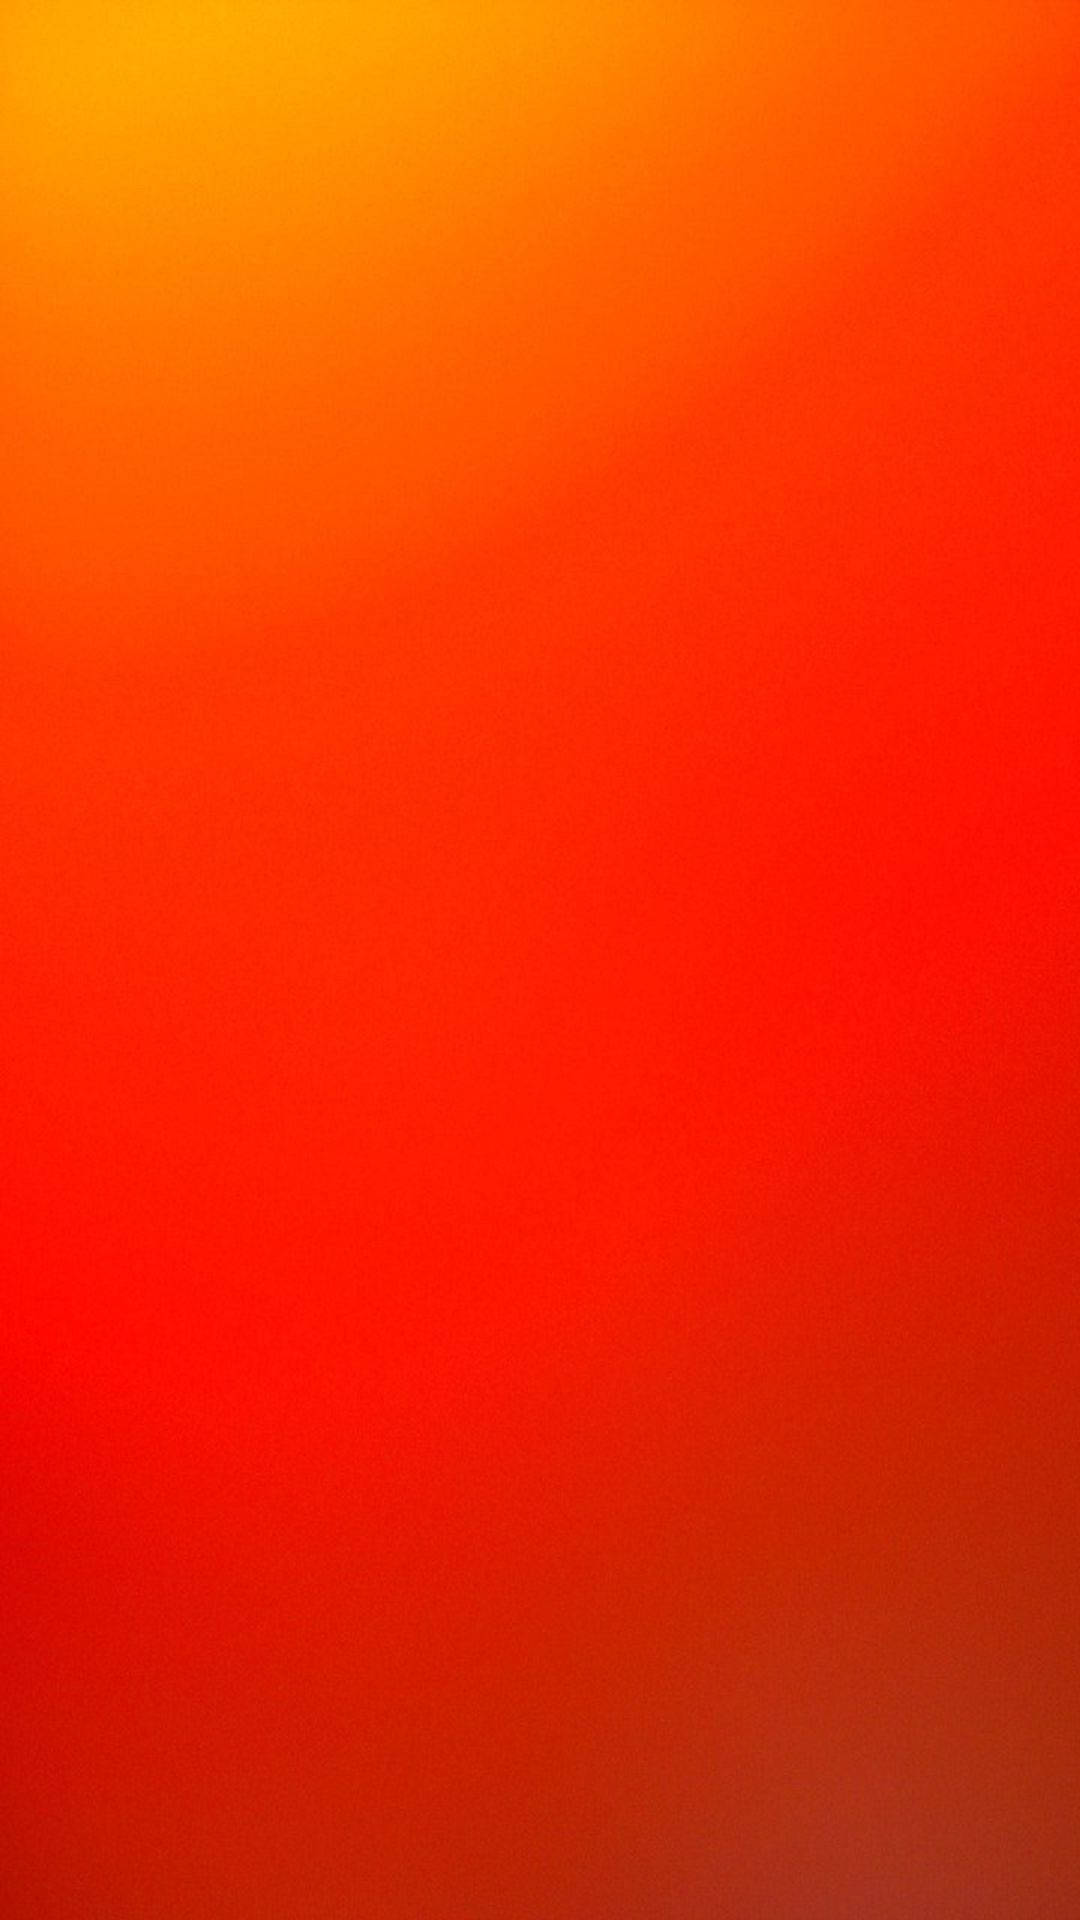 Sättsom Bakgrundsbild På Din Dator Eller Mobiltelefon: En Enhetlig Orange Och Röd Bakgrund. Wallpaper